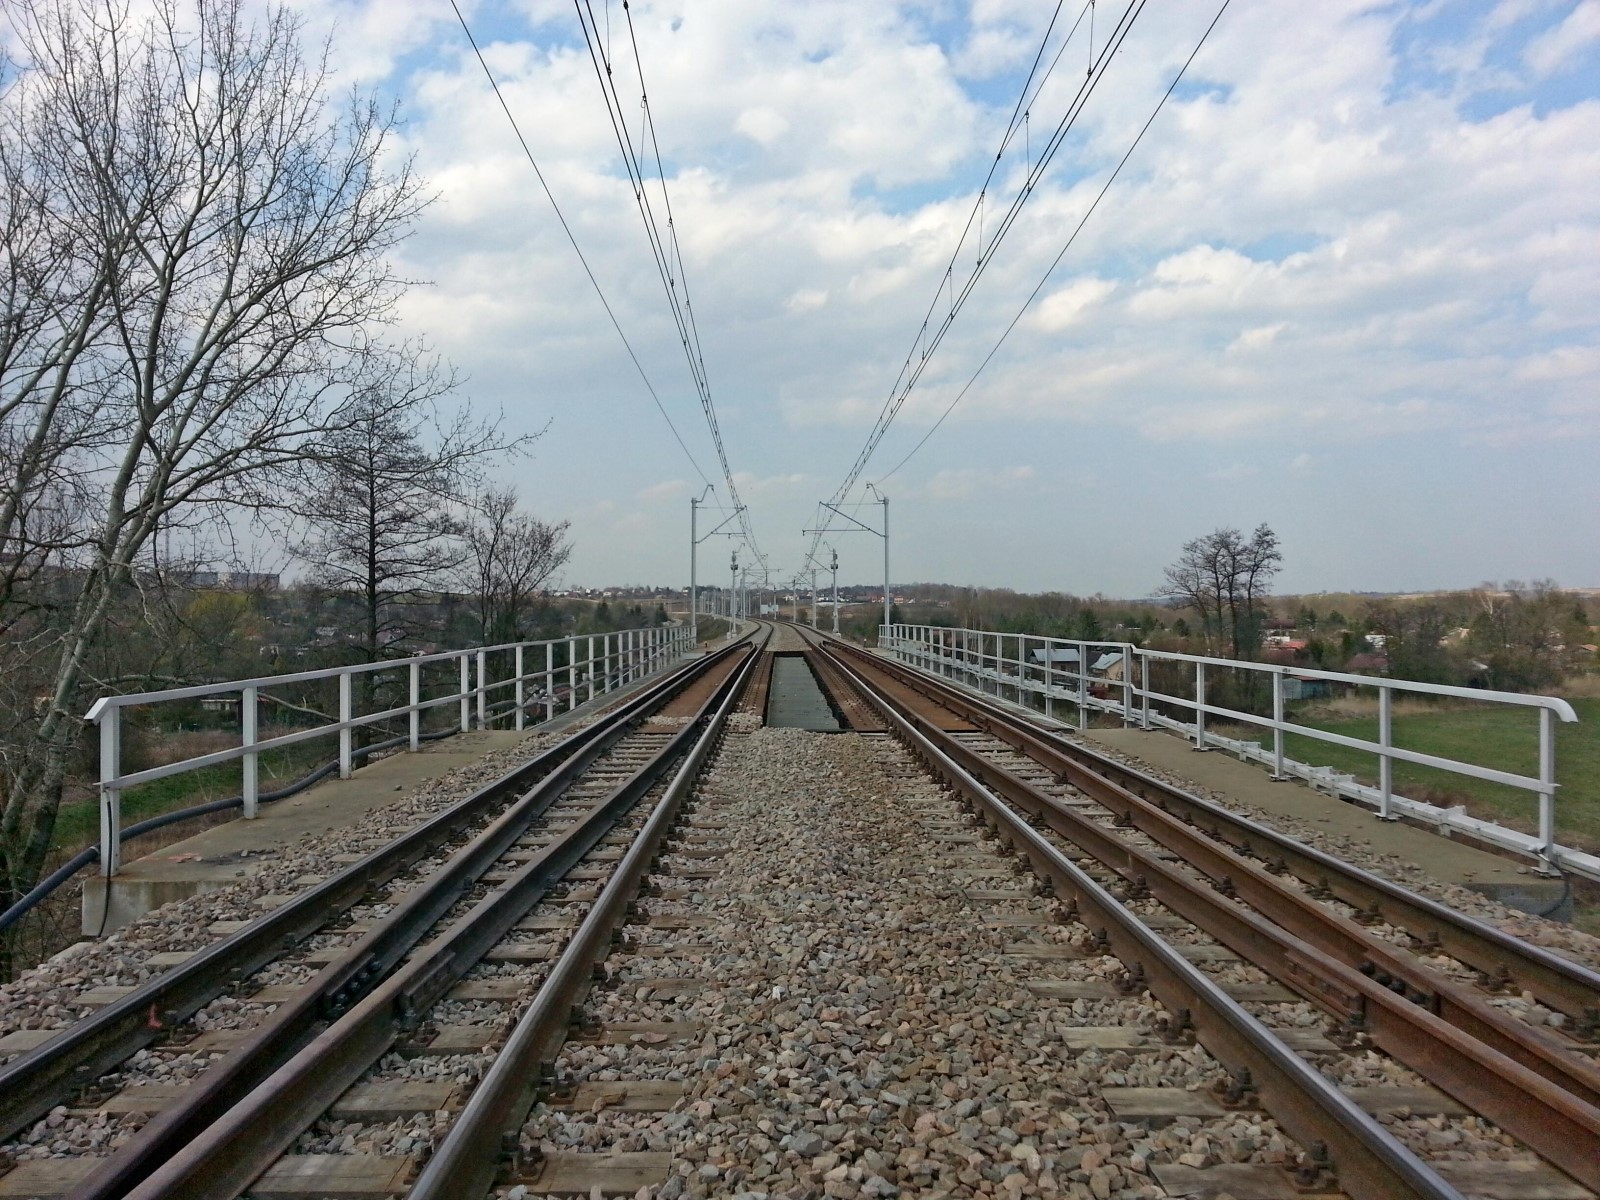 Prace budowlane na torze kolejowym, Kraków  - Železniční stavby